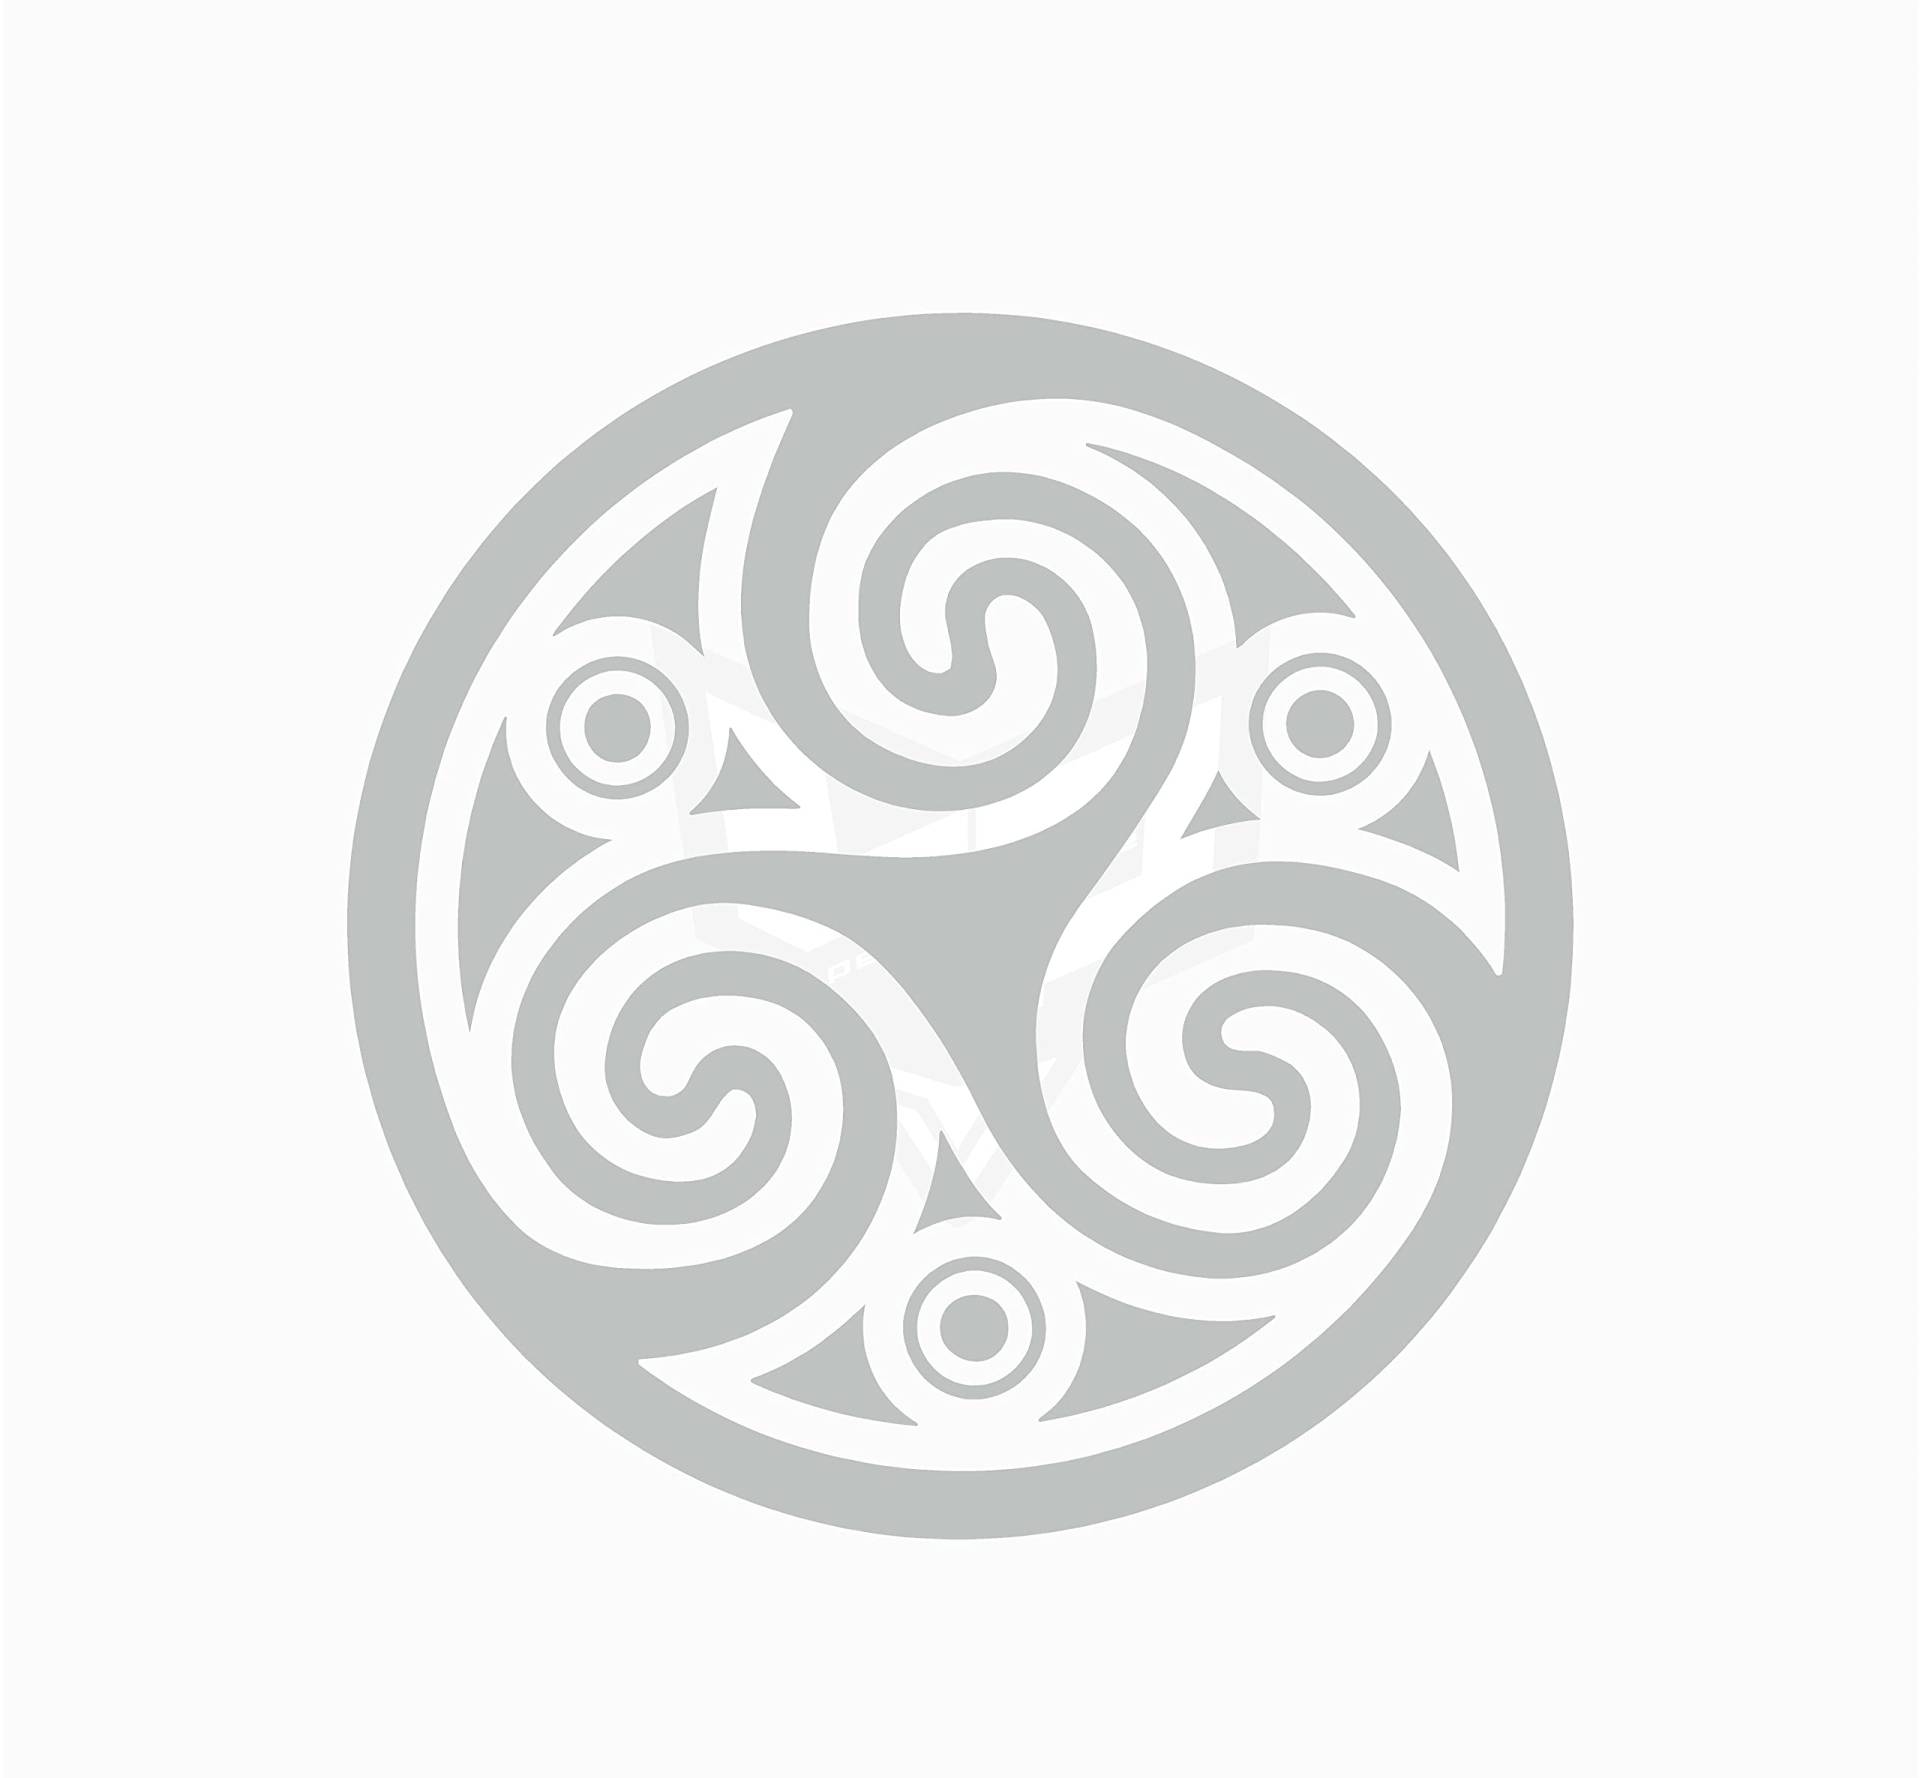 Artstickers Aufkleber Trisquel Celta Mod.3, Symbol Kelta, verschiedene Größen und Farben zur Auswahl, Silber, 18 x 18 cm von Artstickers